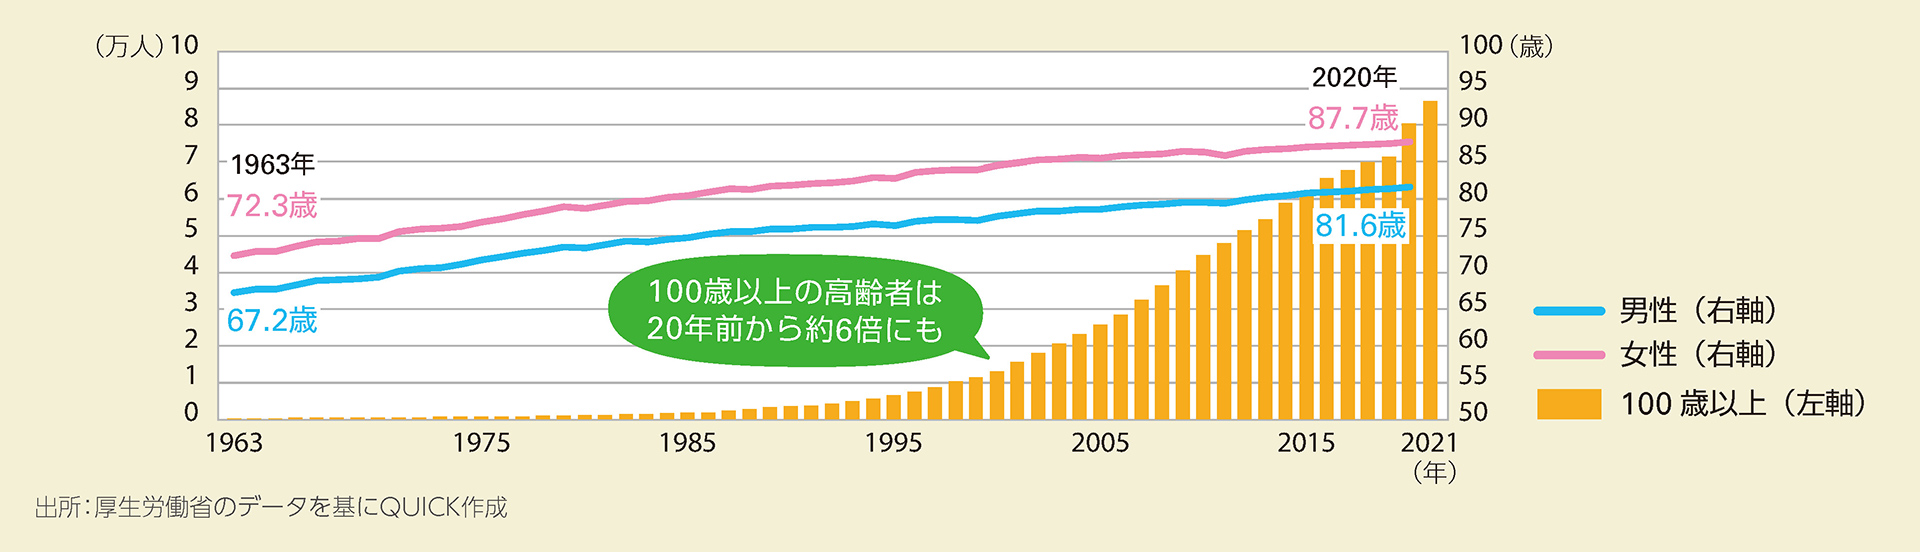 日本における100歳以上の高齢者数と平均寿命の推移のグラフ